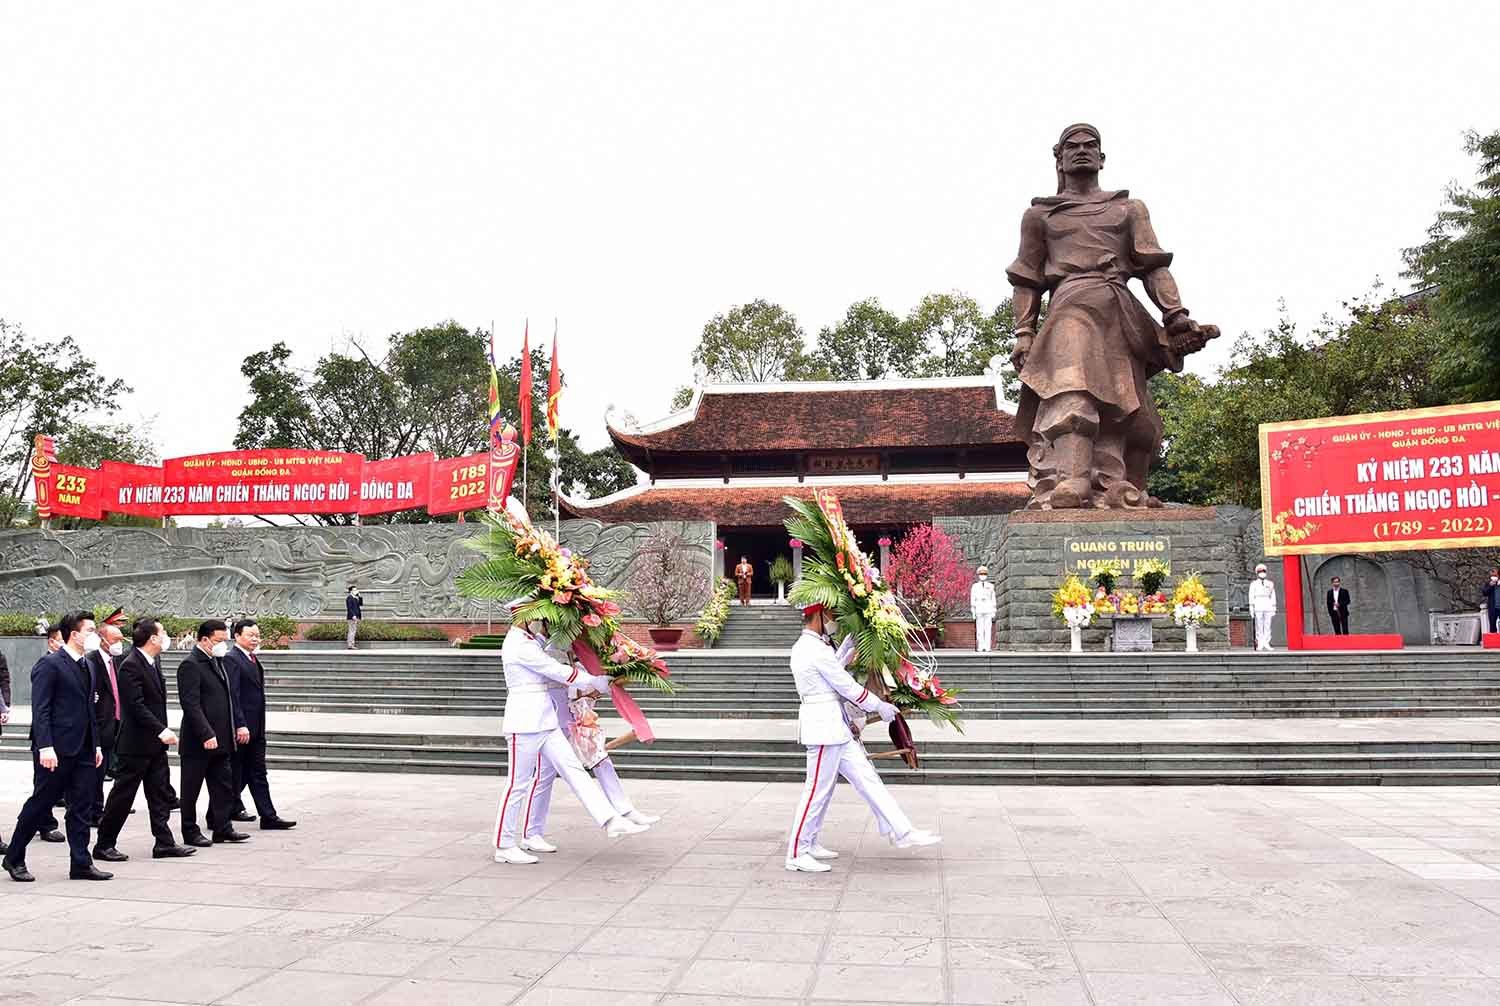 Dâng hương tưởng nhớ Hoàng đế Quang Trung - Nguyễn Huệ